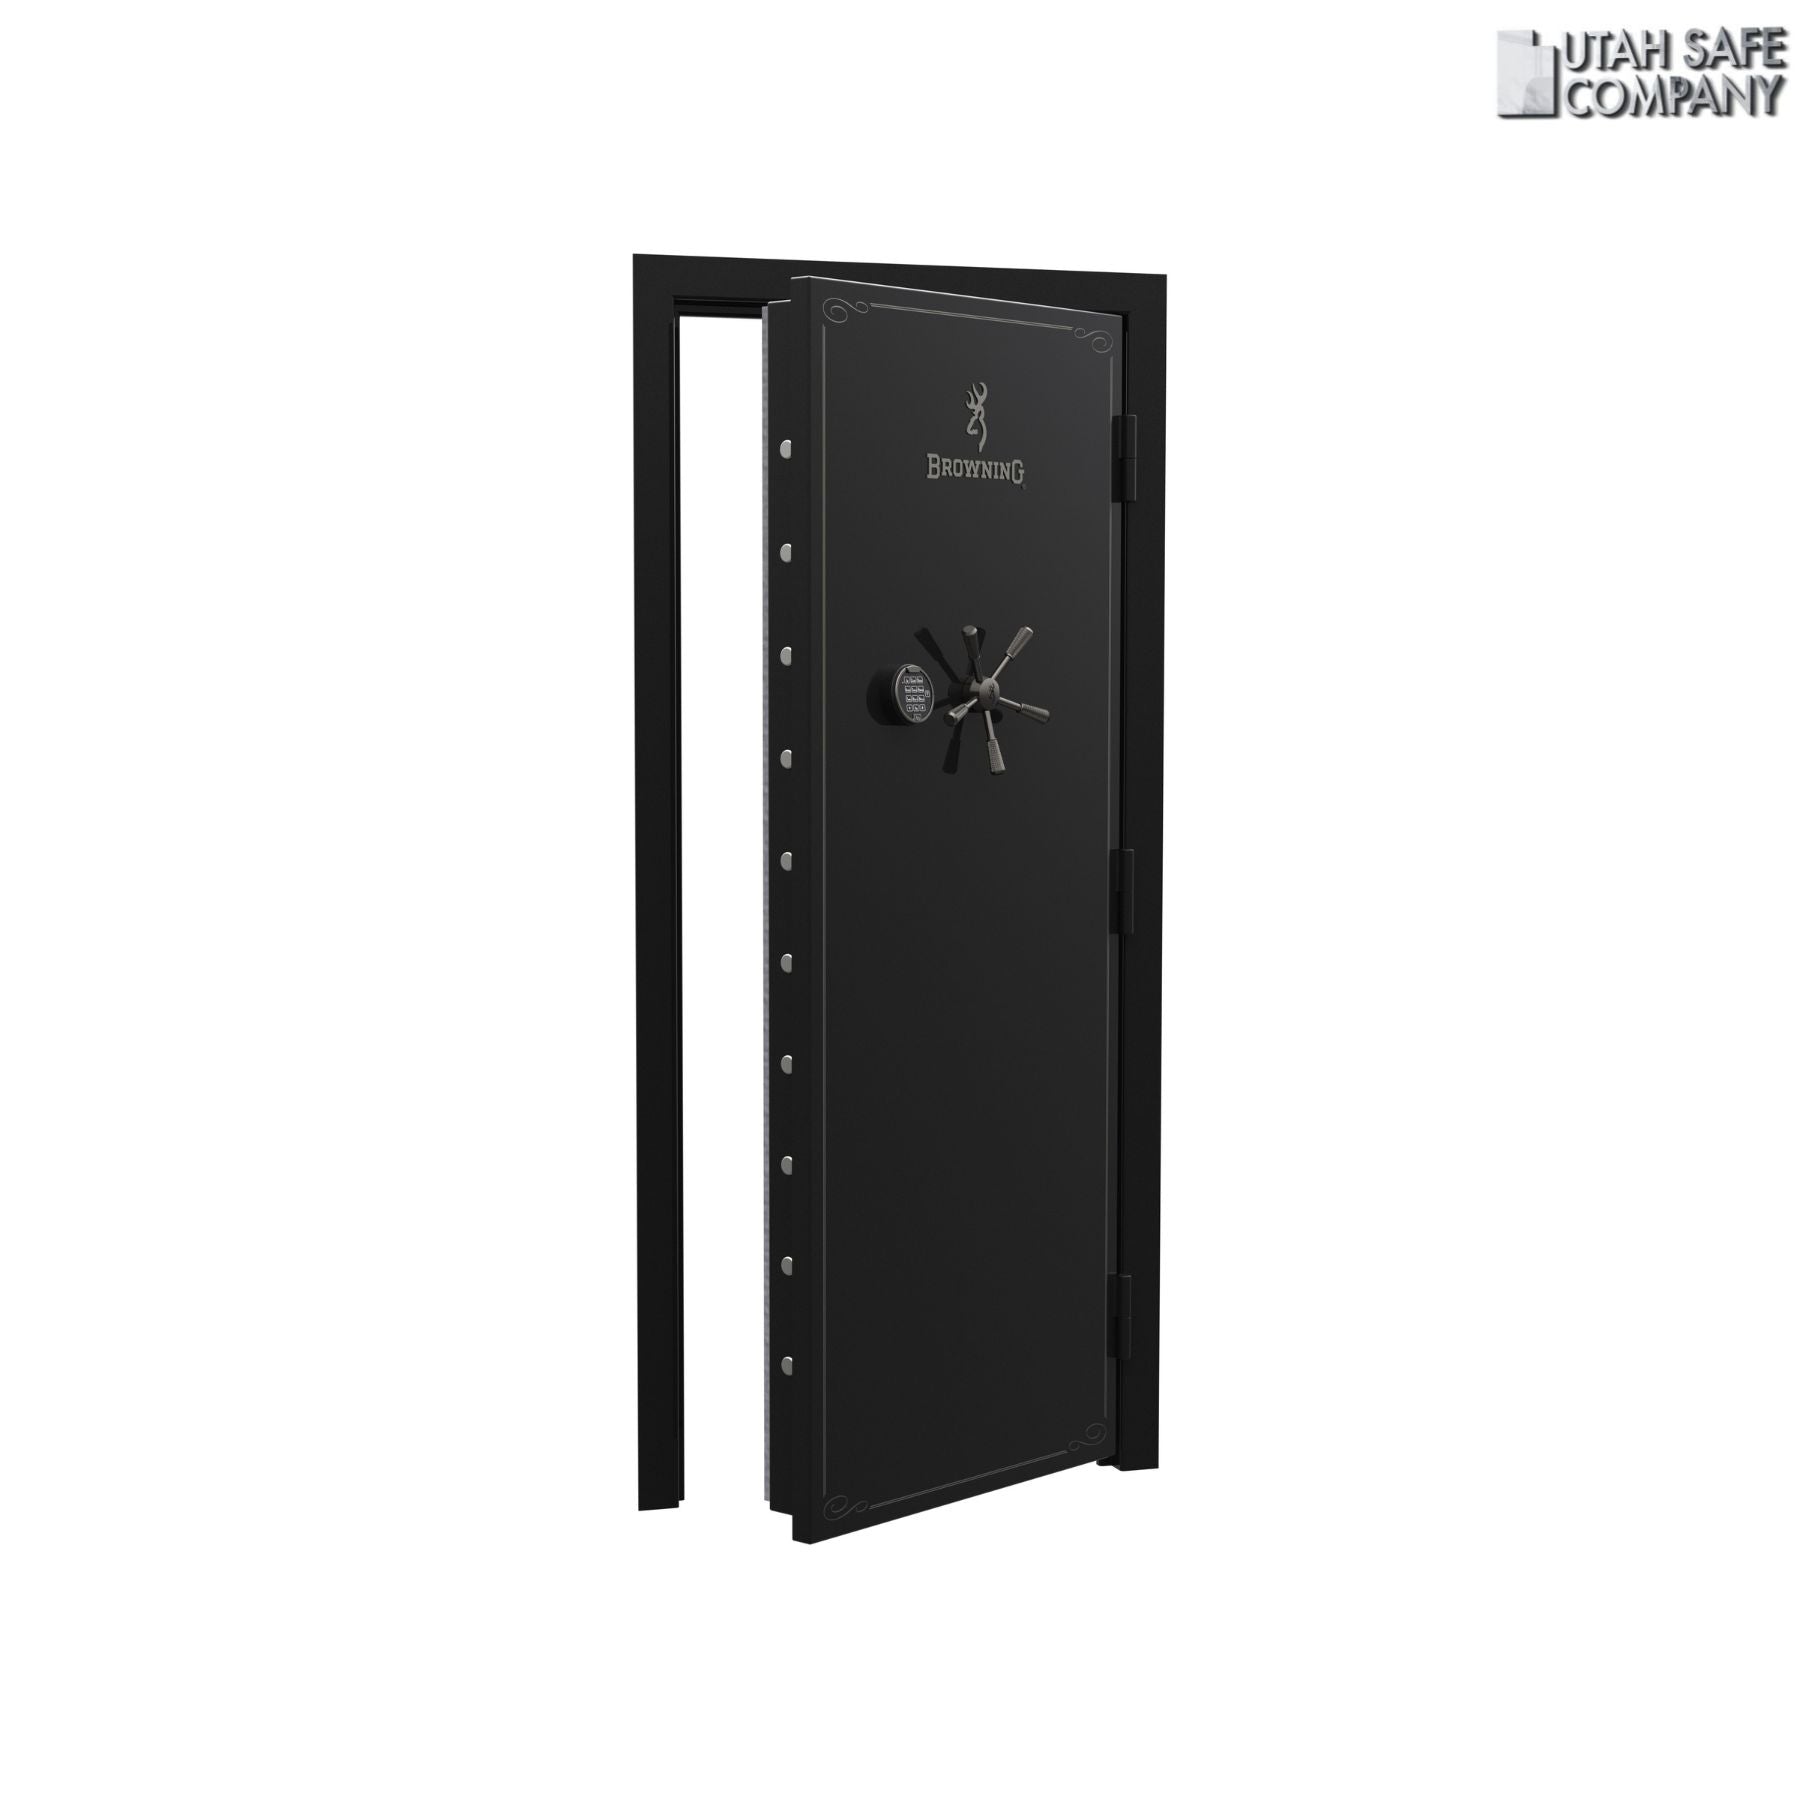 Browning Standard Out-Swing Vault Door